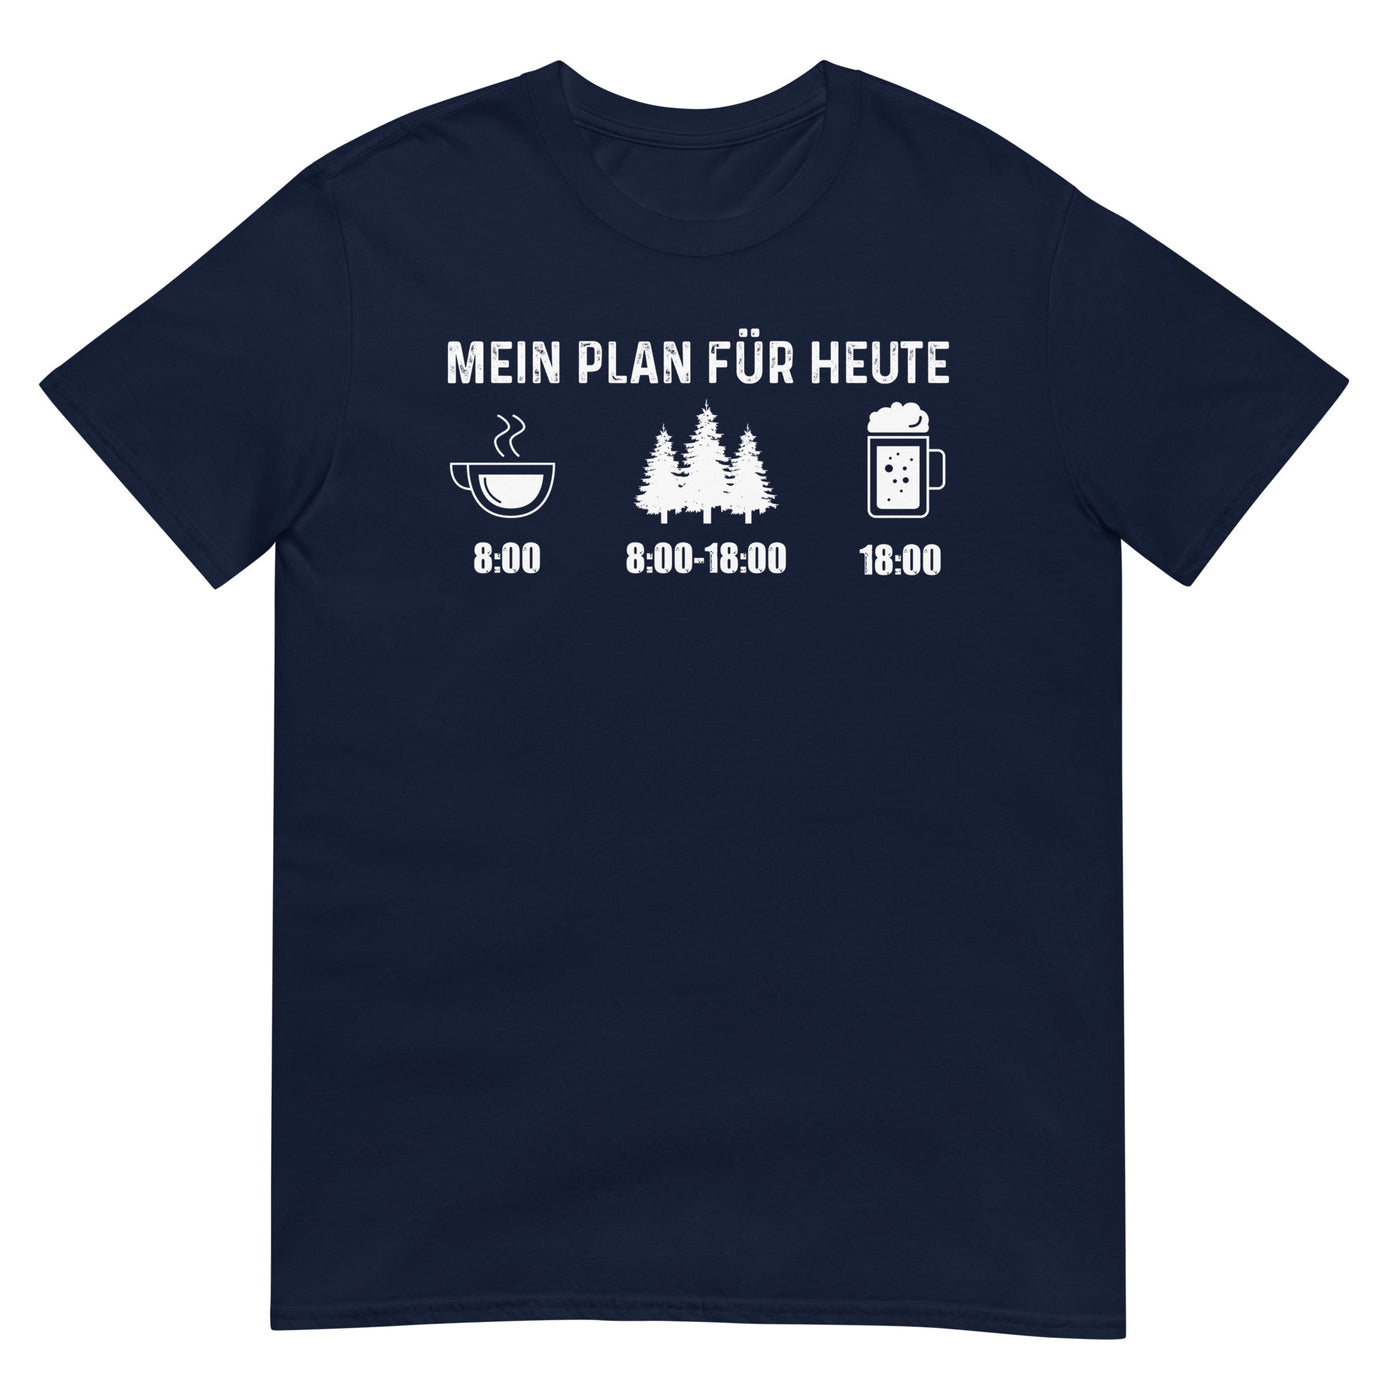 Mein Plan Für Heute 3 - T-Shirt (Unisex) camping xxx yyy zzz Navy